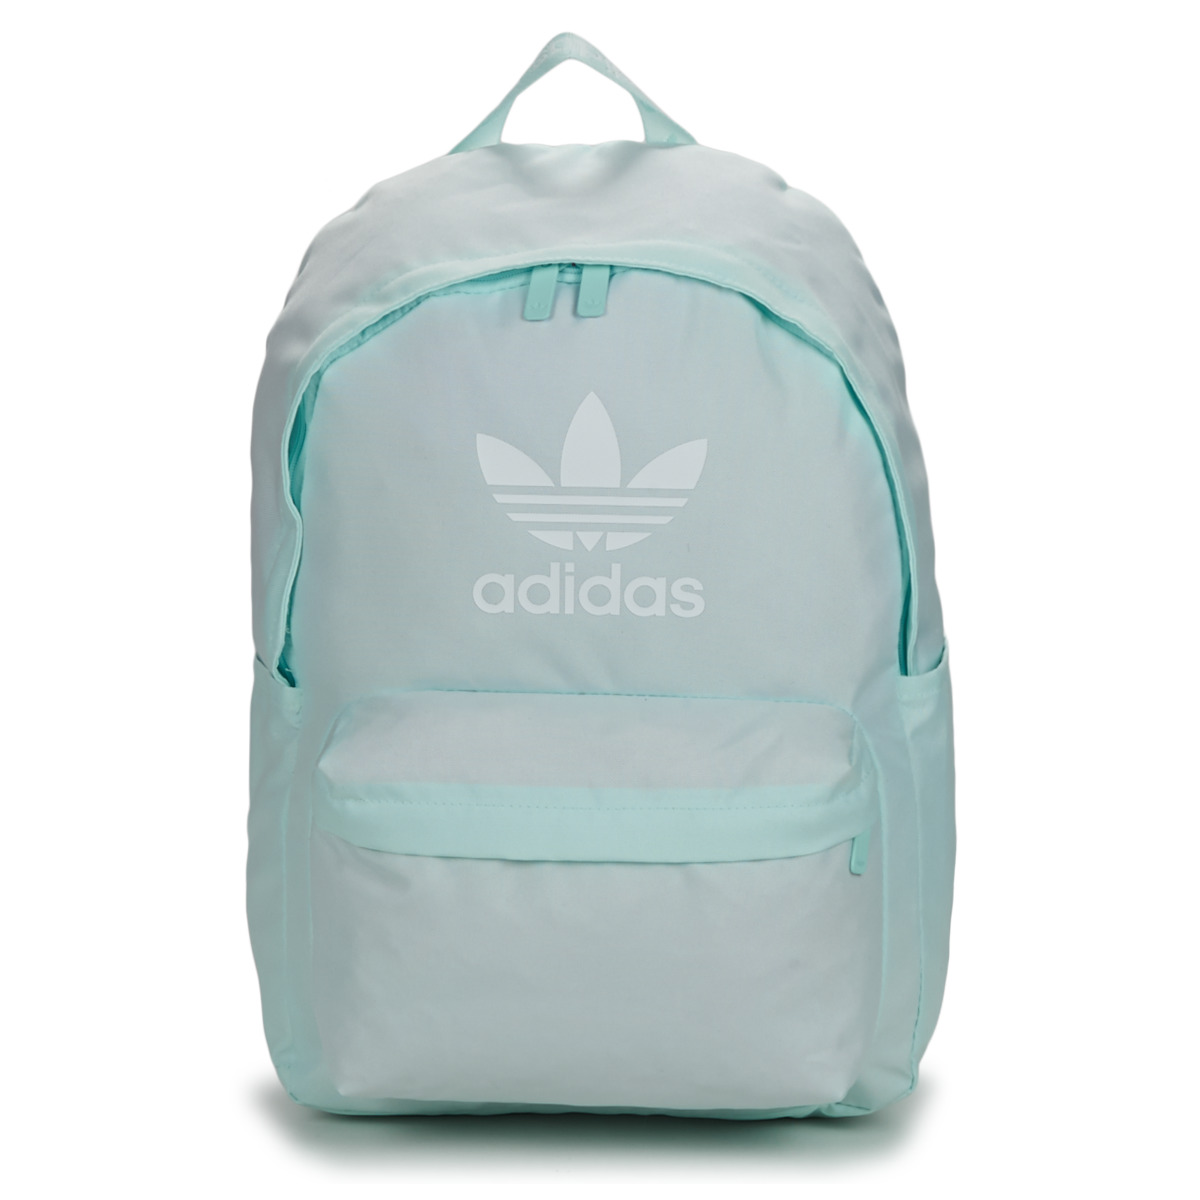 包 双肩包 Adidas Originals 阿迪达斯三叶草 ADICOLOR BACKPACK 蓝色